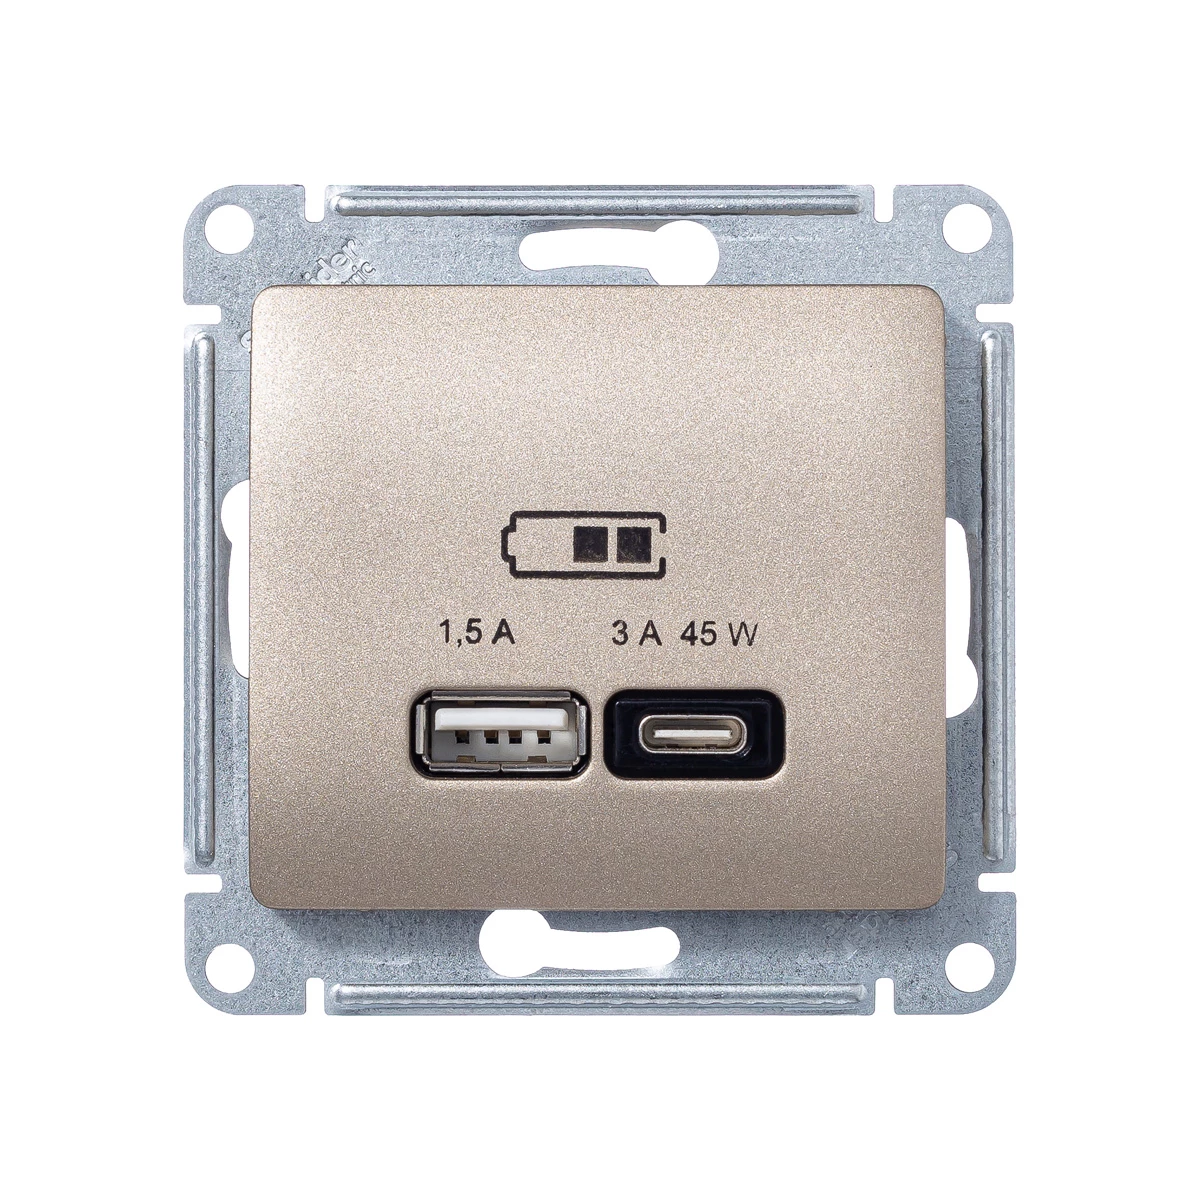  артикул GSL000429 название Розетка двойная для быcтрой зарядки USB, Тип А+С, 45Вт , Титан, серия Glossa, Schneider Electric